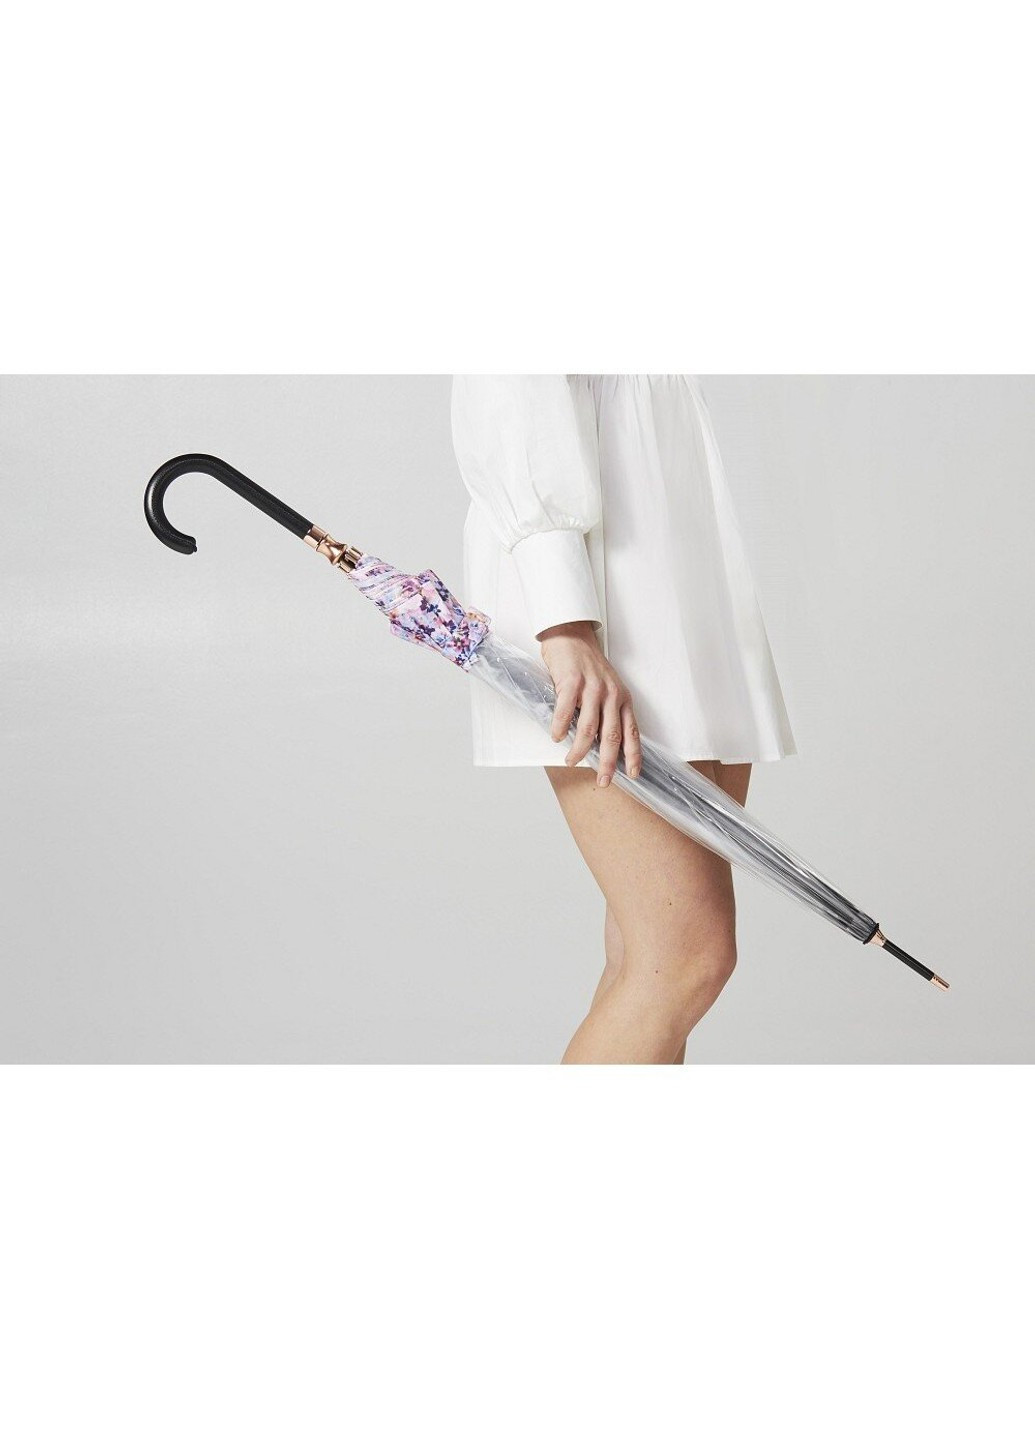 Женский механический зонт-трость L866 Birdcage-2 Luxe Digital Blossom (Цветок) Fulton (262449464)